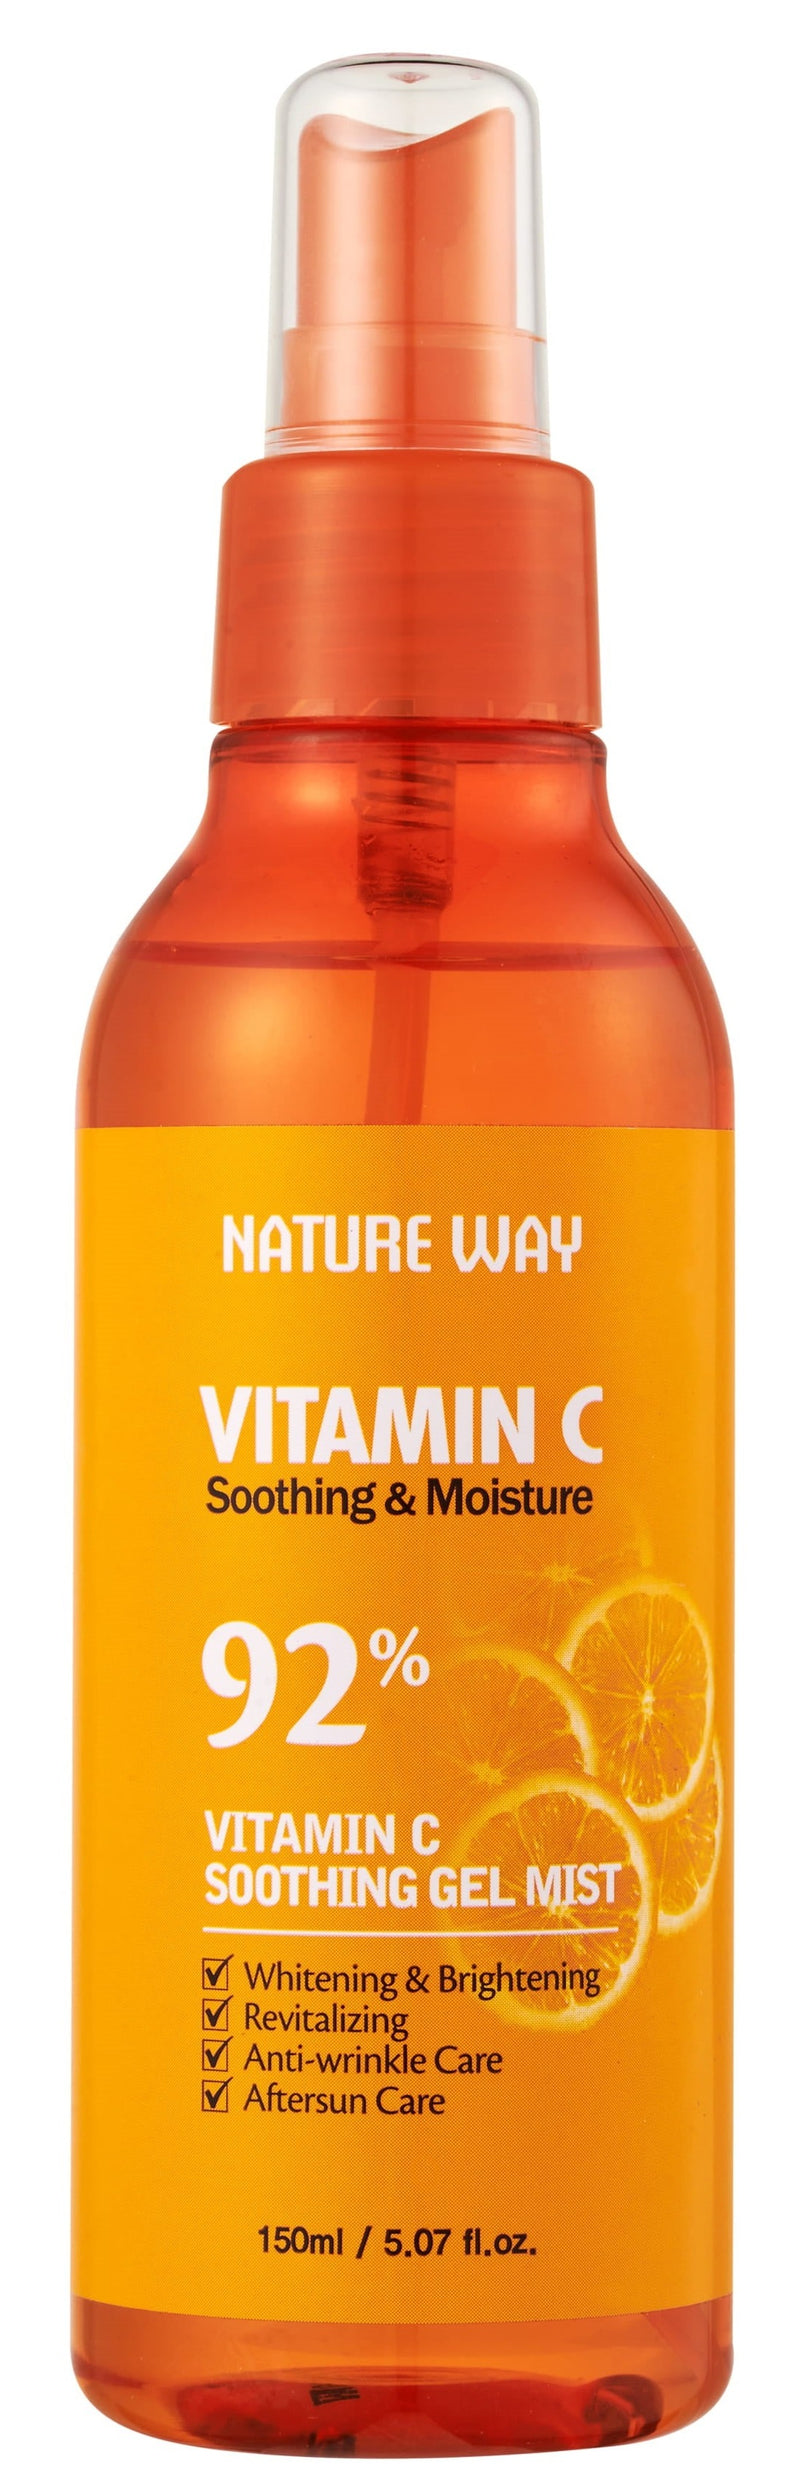 Nature Way Vitamin C Soothing Gel Mist - MeStore